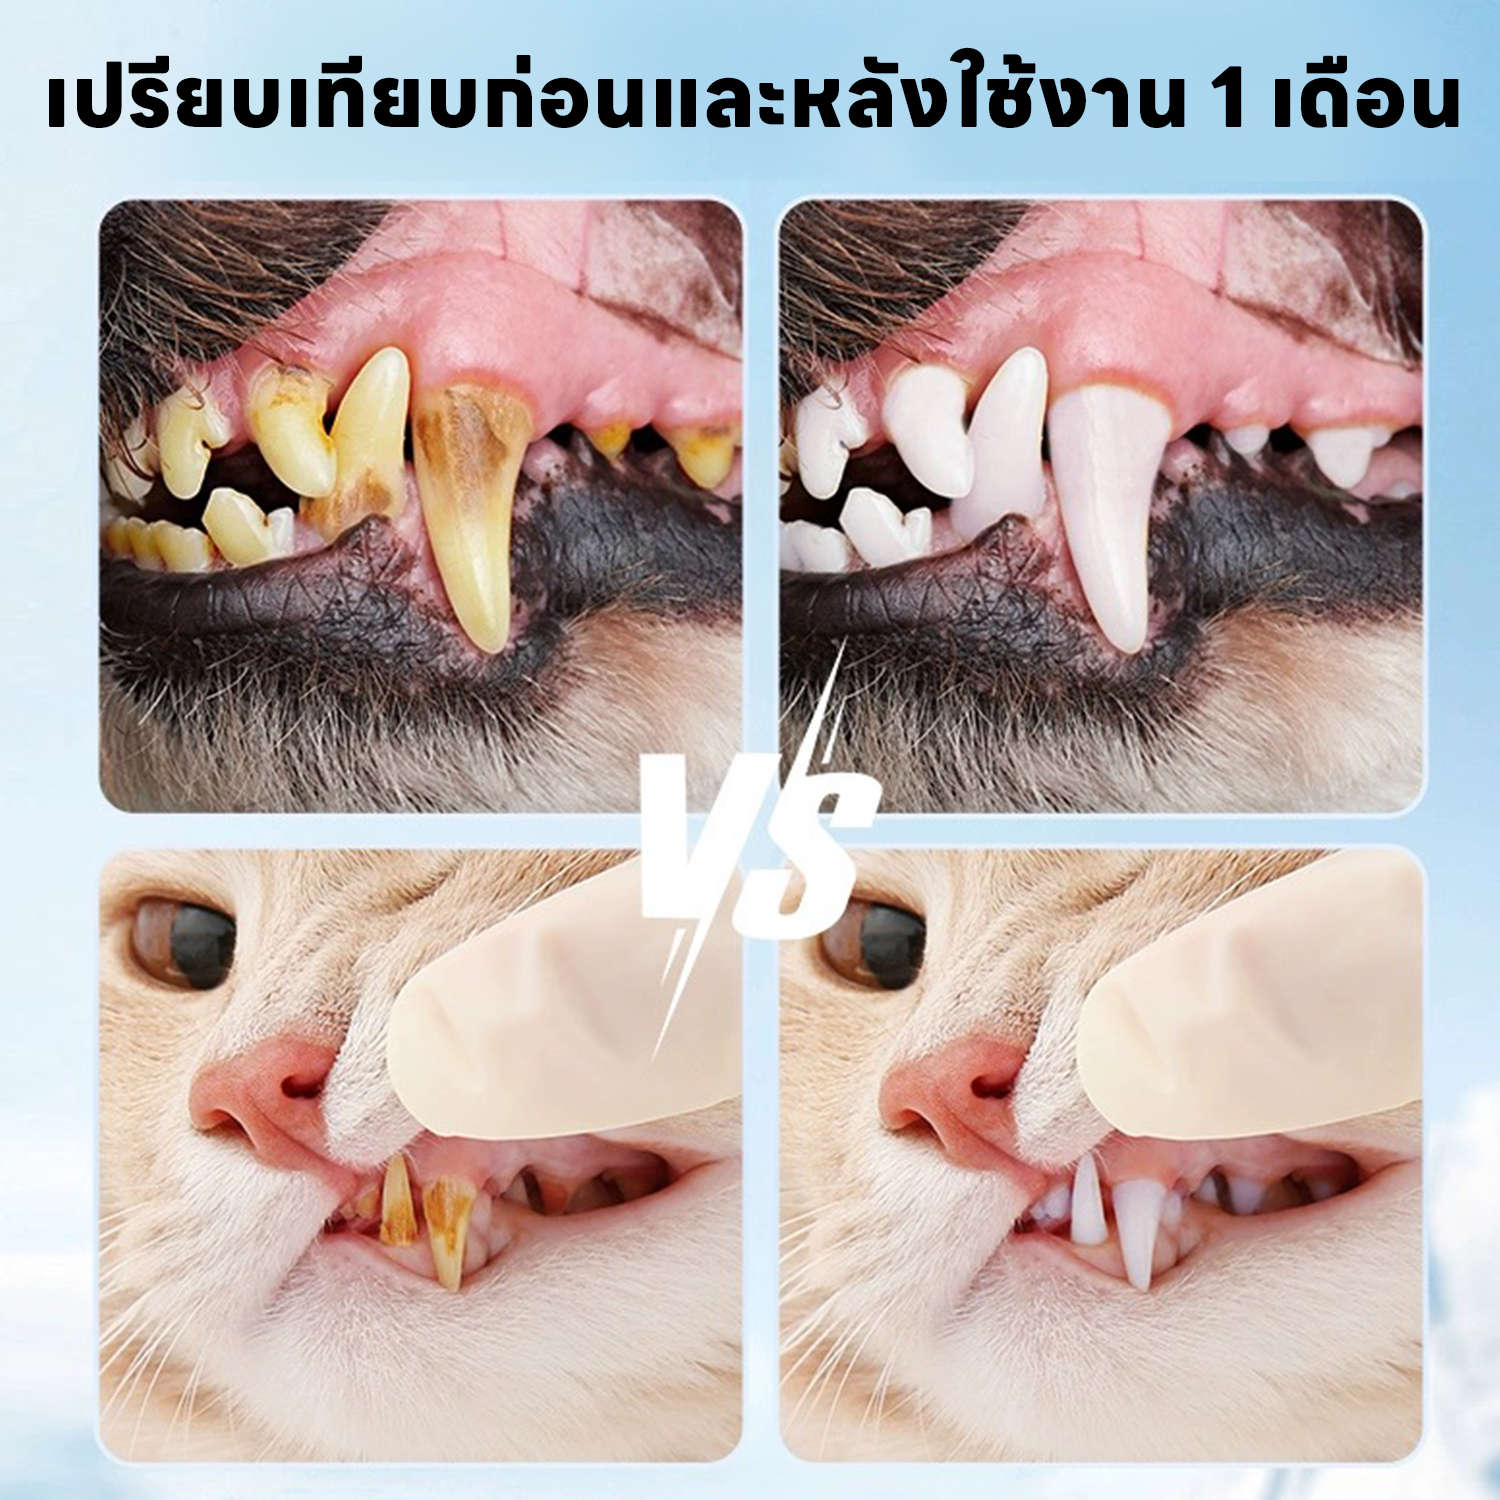 แปรงสีฟัน yoyo Pet ผ้าเช็ดฟันแมว ฟันหมา 50 ชิ้น ลดคราบหินปูน แมว ขจัดกลิ่นปากในแมว ถุงนิ้ว ทำความสะอาดฟัน